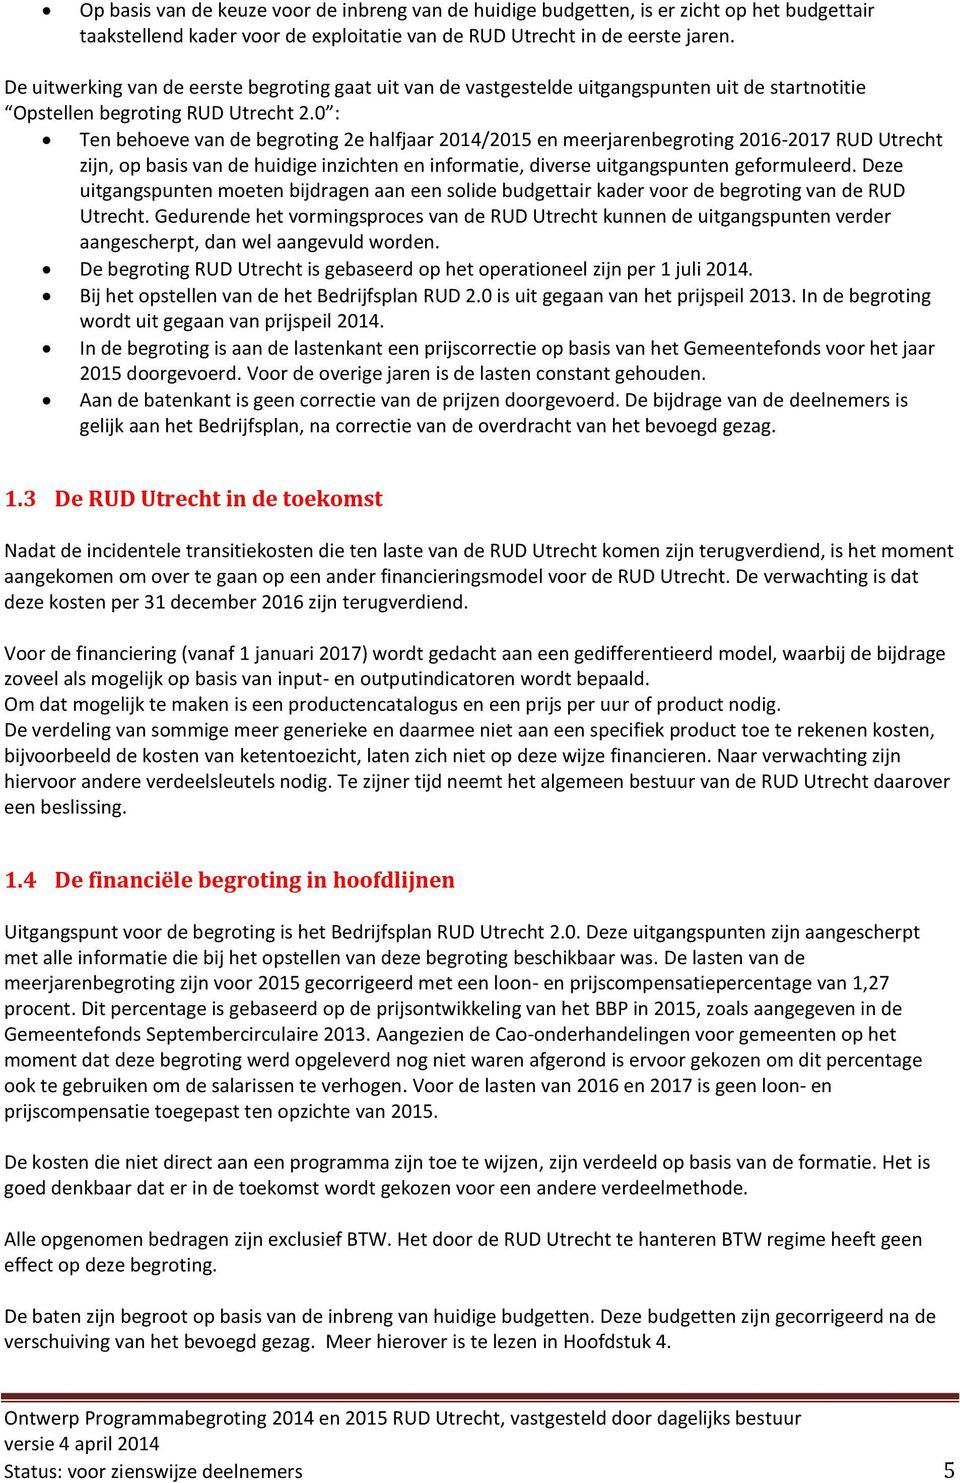 0 : Ten behoeve van de begroting 2e halfjaar 2014/2015 en meerjarenbegroting 2016-2017 RUD Utrecht zijn, op basis van de huidige inzichten en informatie, diverse uitgangspunten geformuleerd.